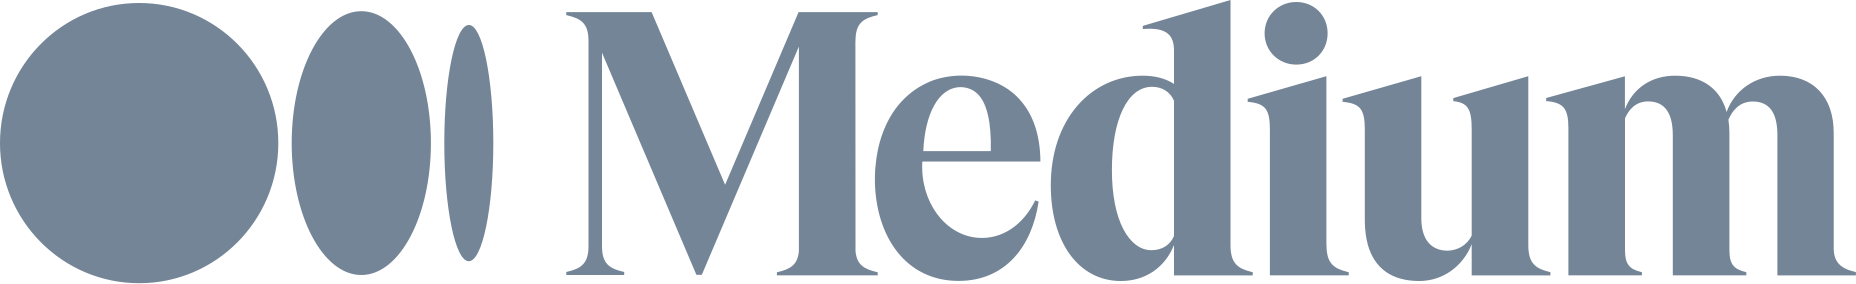 Medium_(website)_logo